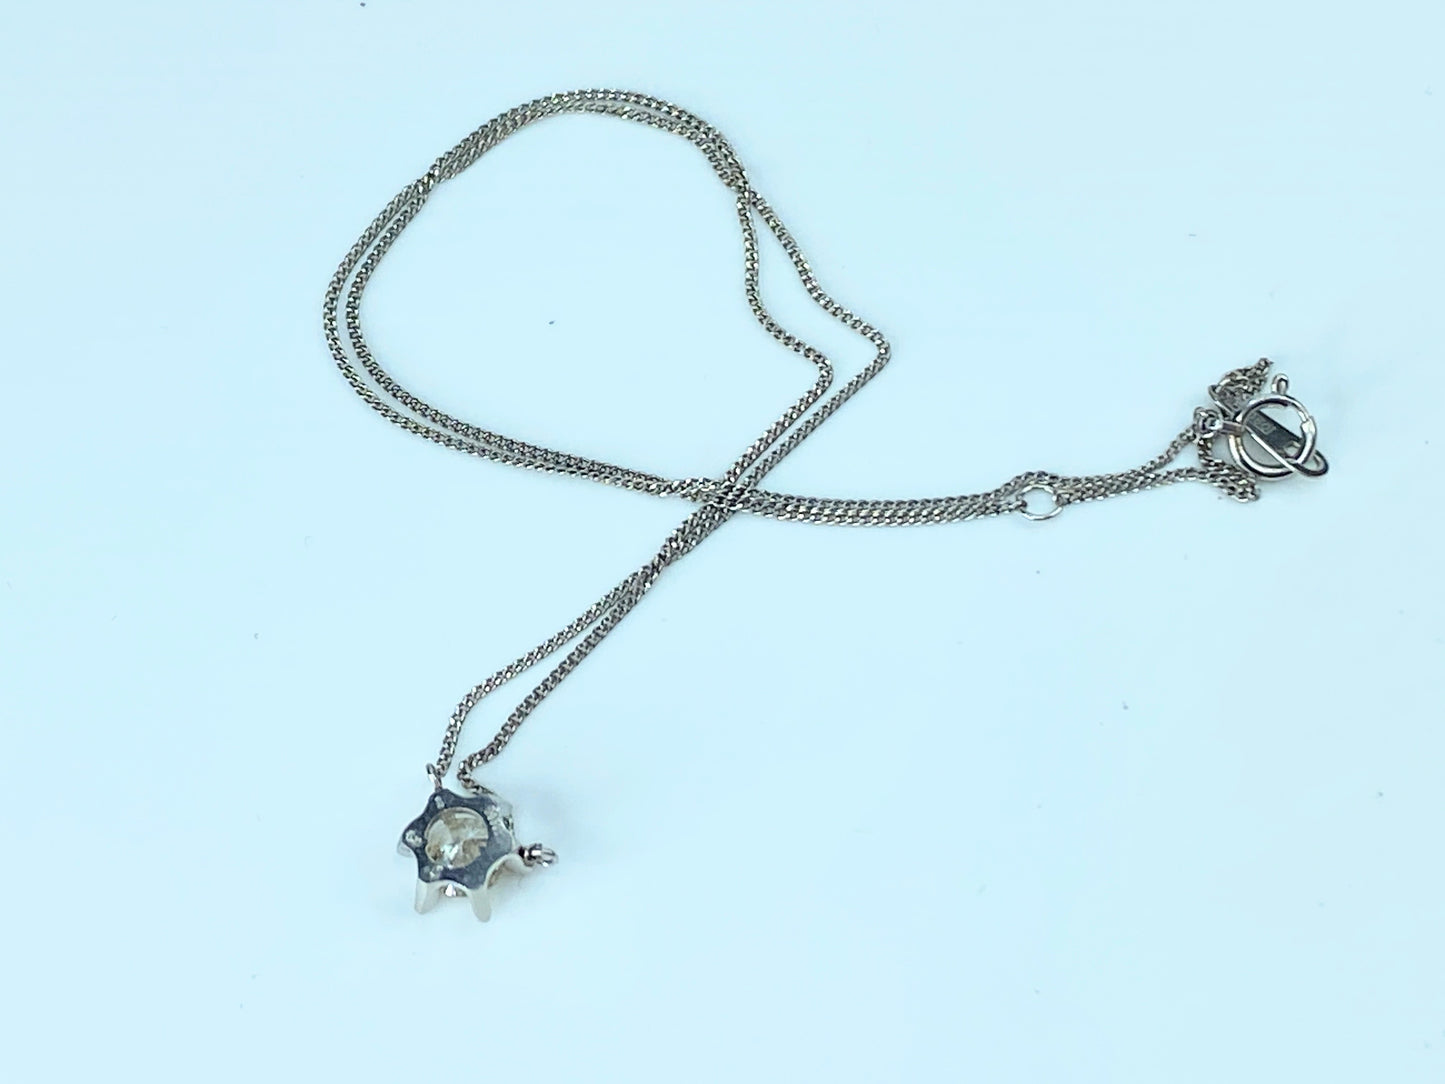 Appraised $3,995 Platinum 0.61ct round brilliant Diamond necklace